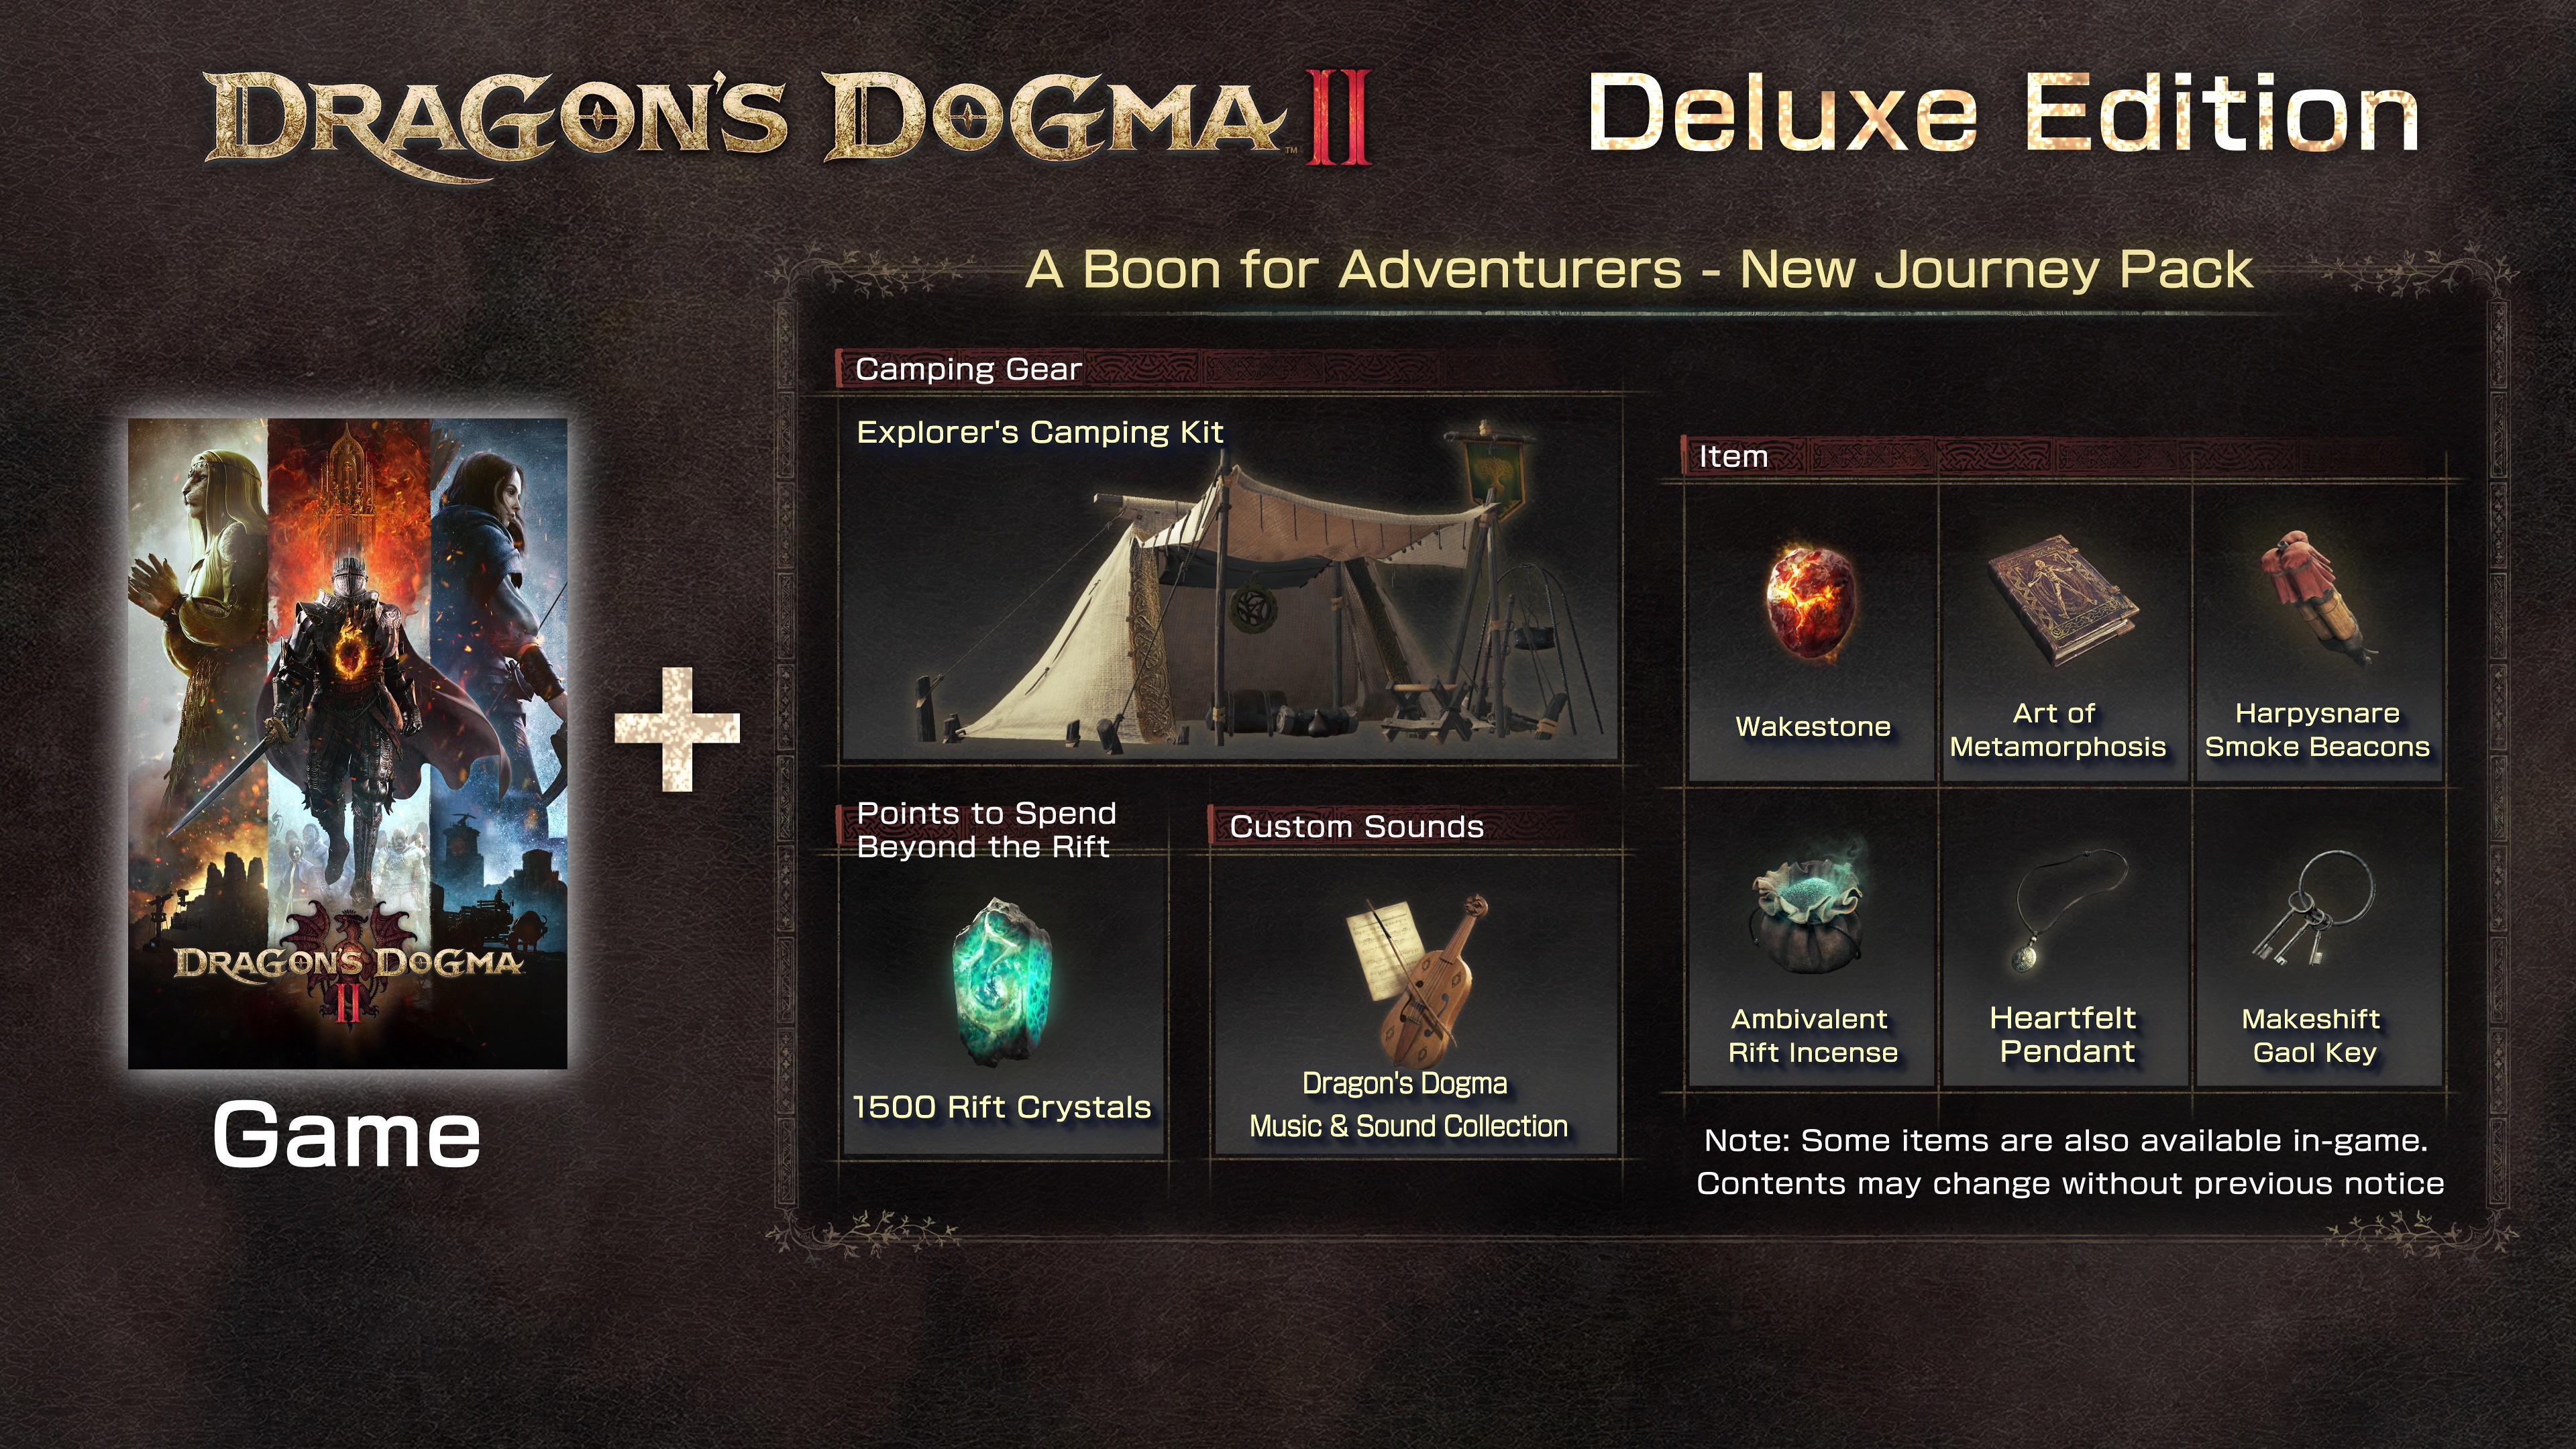 Plaion PS5 Dragon's Dogma 2 